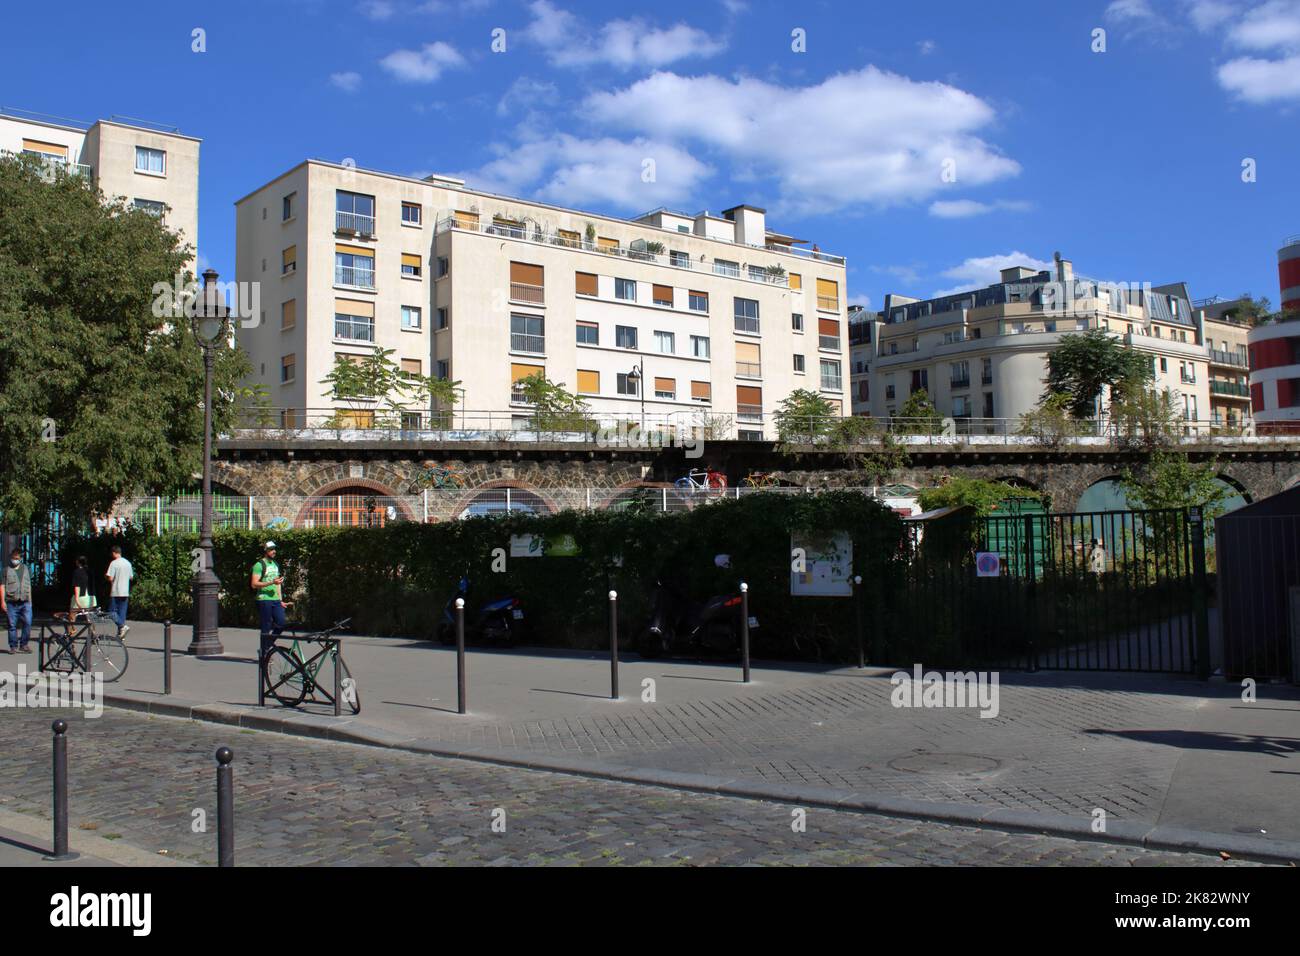 Vue sur la ligne de train et les bâtiments résidentiels le long du bassin de la Villette situé dans le 19th arrondissement de Paris France. Banque D'Images